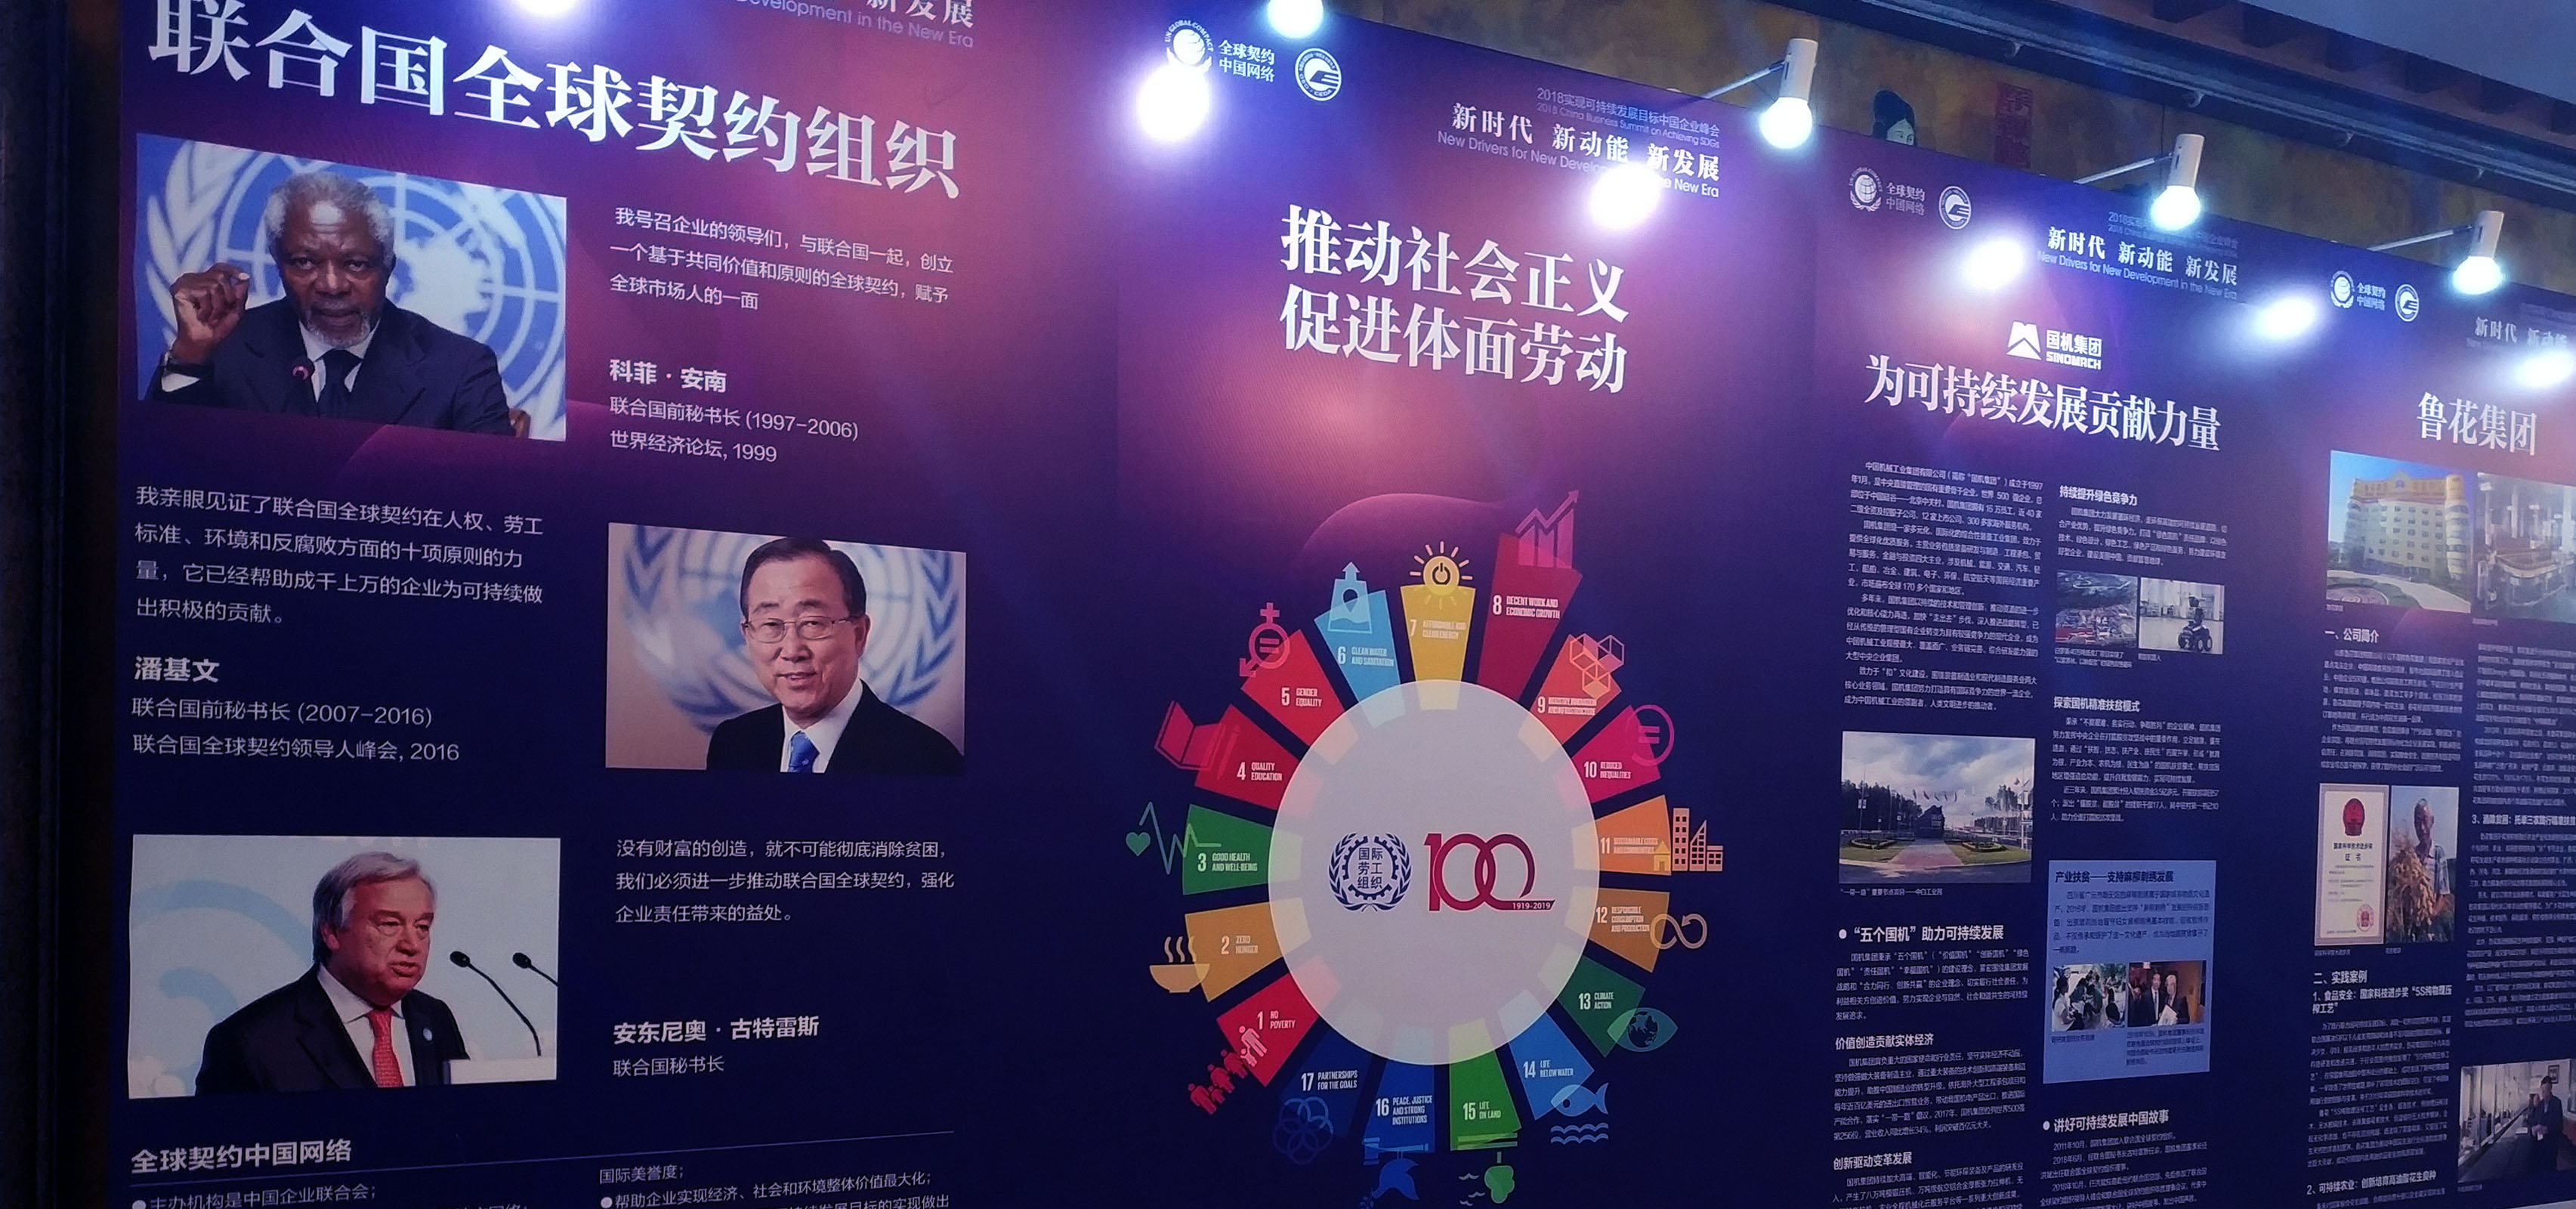 皆亨咨询受邀出席“2018实现可持续发展目标中国企业峰会”并在平行论坛发表主题分享